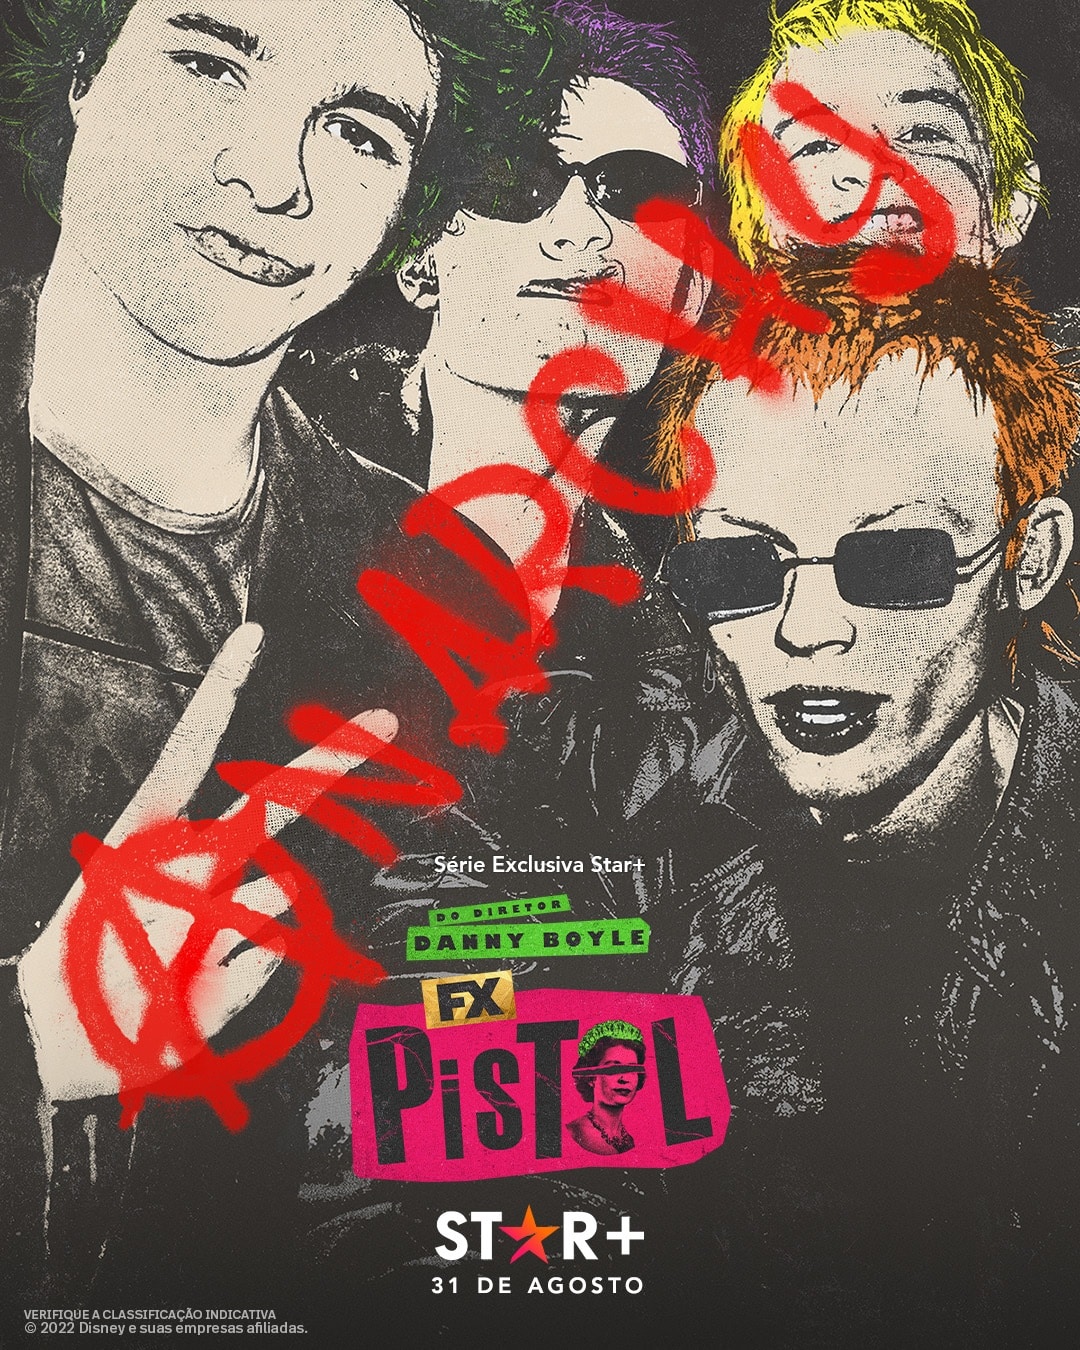 Pistol-Poster-Star-Plus Star+ anuncia data da série sobre os Sex Pistols; veja o trailer legendado